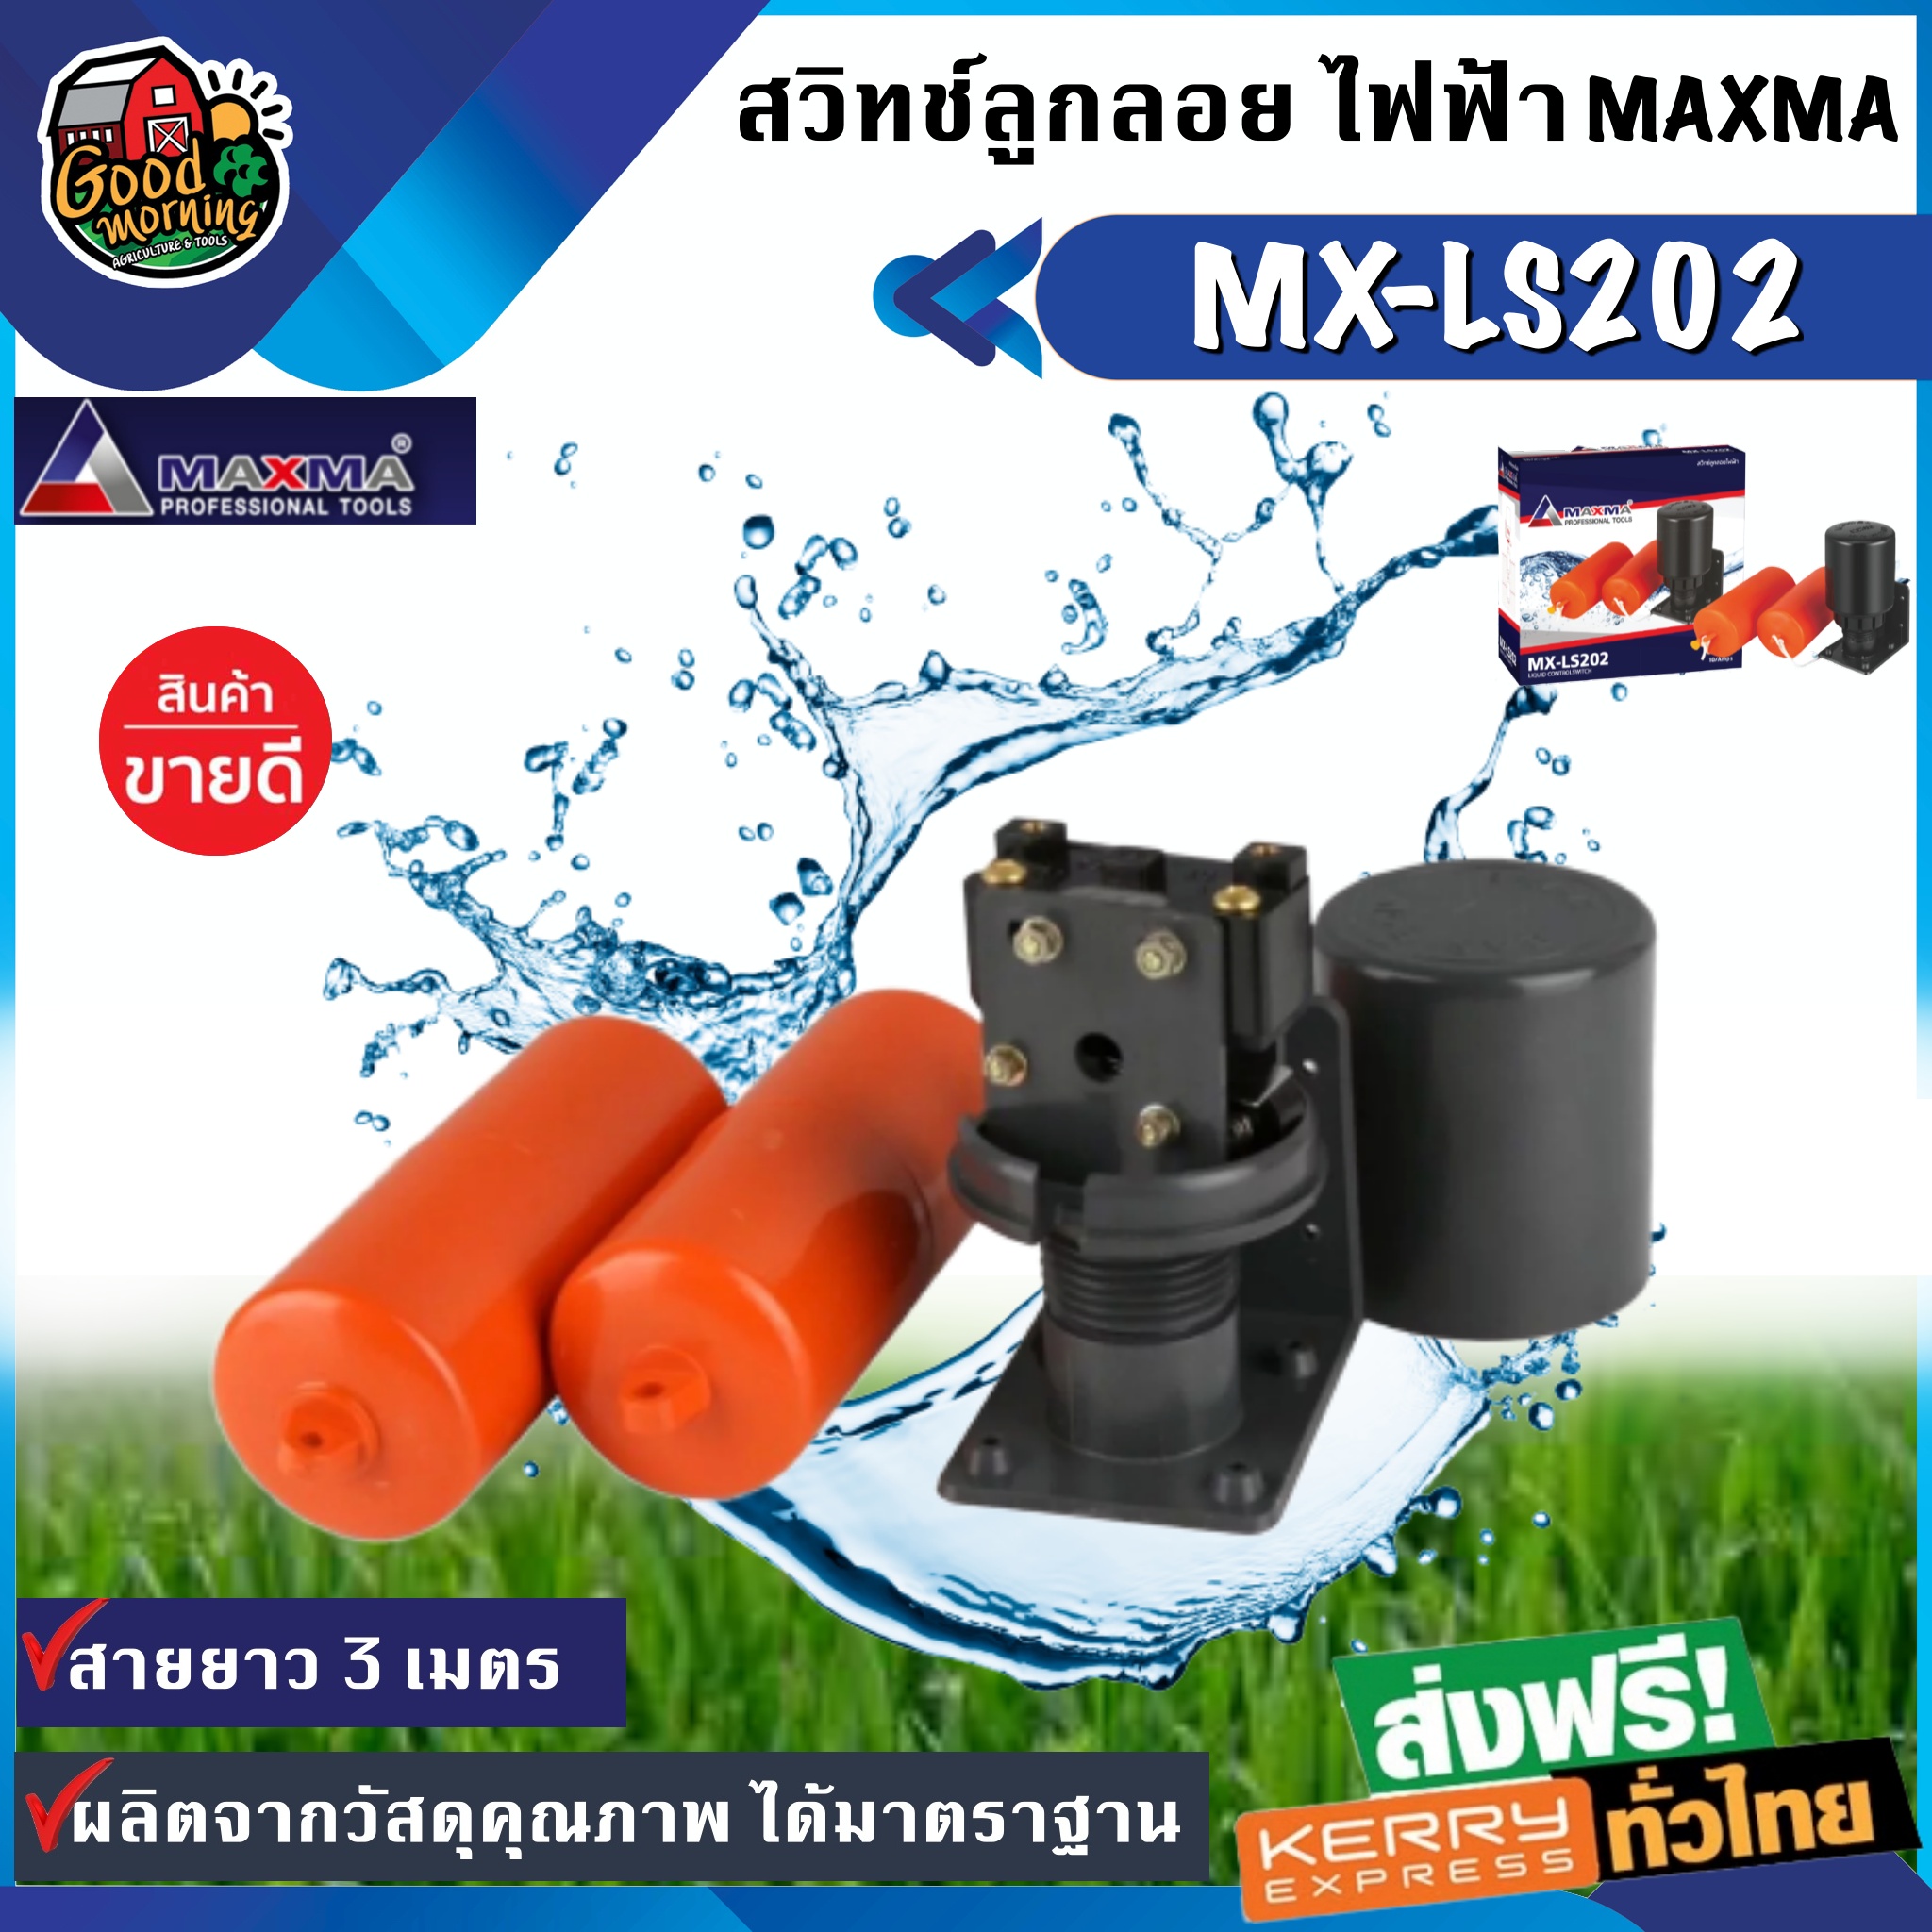 สวิทซ์ ลูกลอย ไฟฟ้า MAXMA รุ่น MX-LS202 ลูกลอย ไฟฟ้าสำหรับ ปั้มน้ำ มีลูกลอย 2 ลูก อุปกรณ์เกษตร ส่งฟรีทั่วไทย เก็บเงินปลายทาง